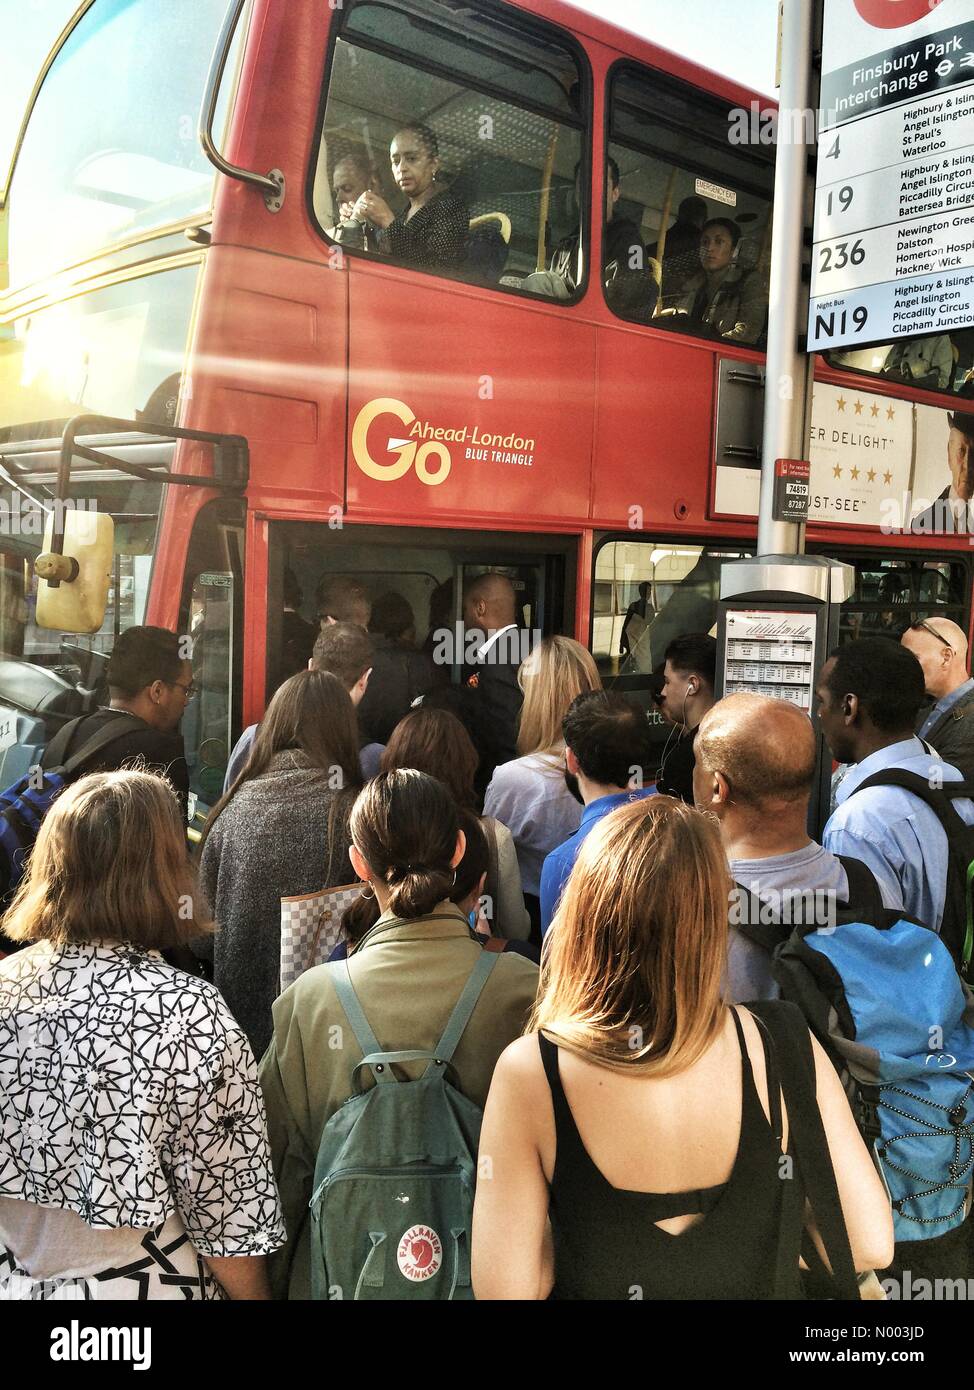 Londres, Royaume-Uni. 09 juillet, 2015. La foule essayant d'obtenir sur les bus londoniens à Finsbury Park en raison de la grève du tube Juillet 9th, 2015 Crédit : Neil Juggins / StockimoNews/Alamy Live News Banque D'Images